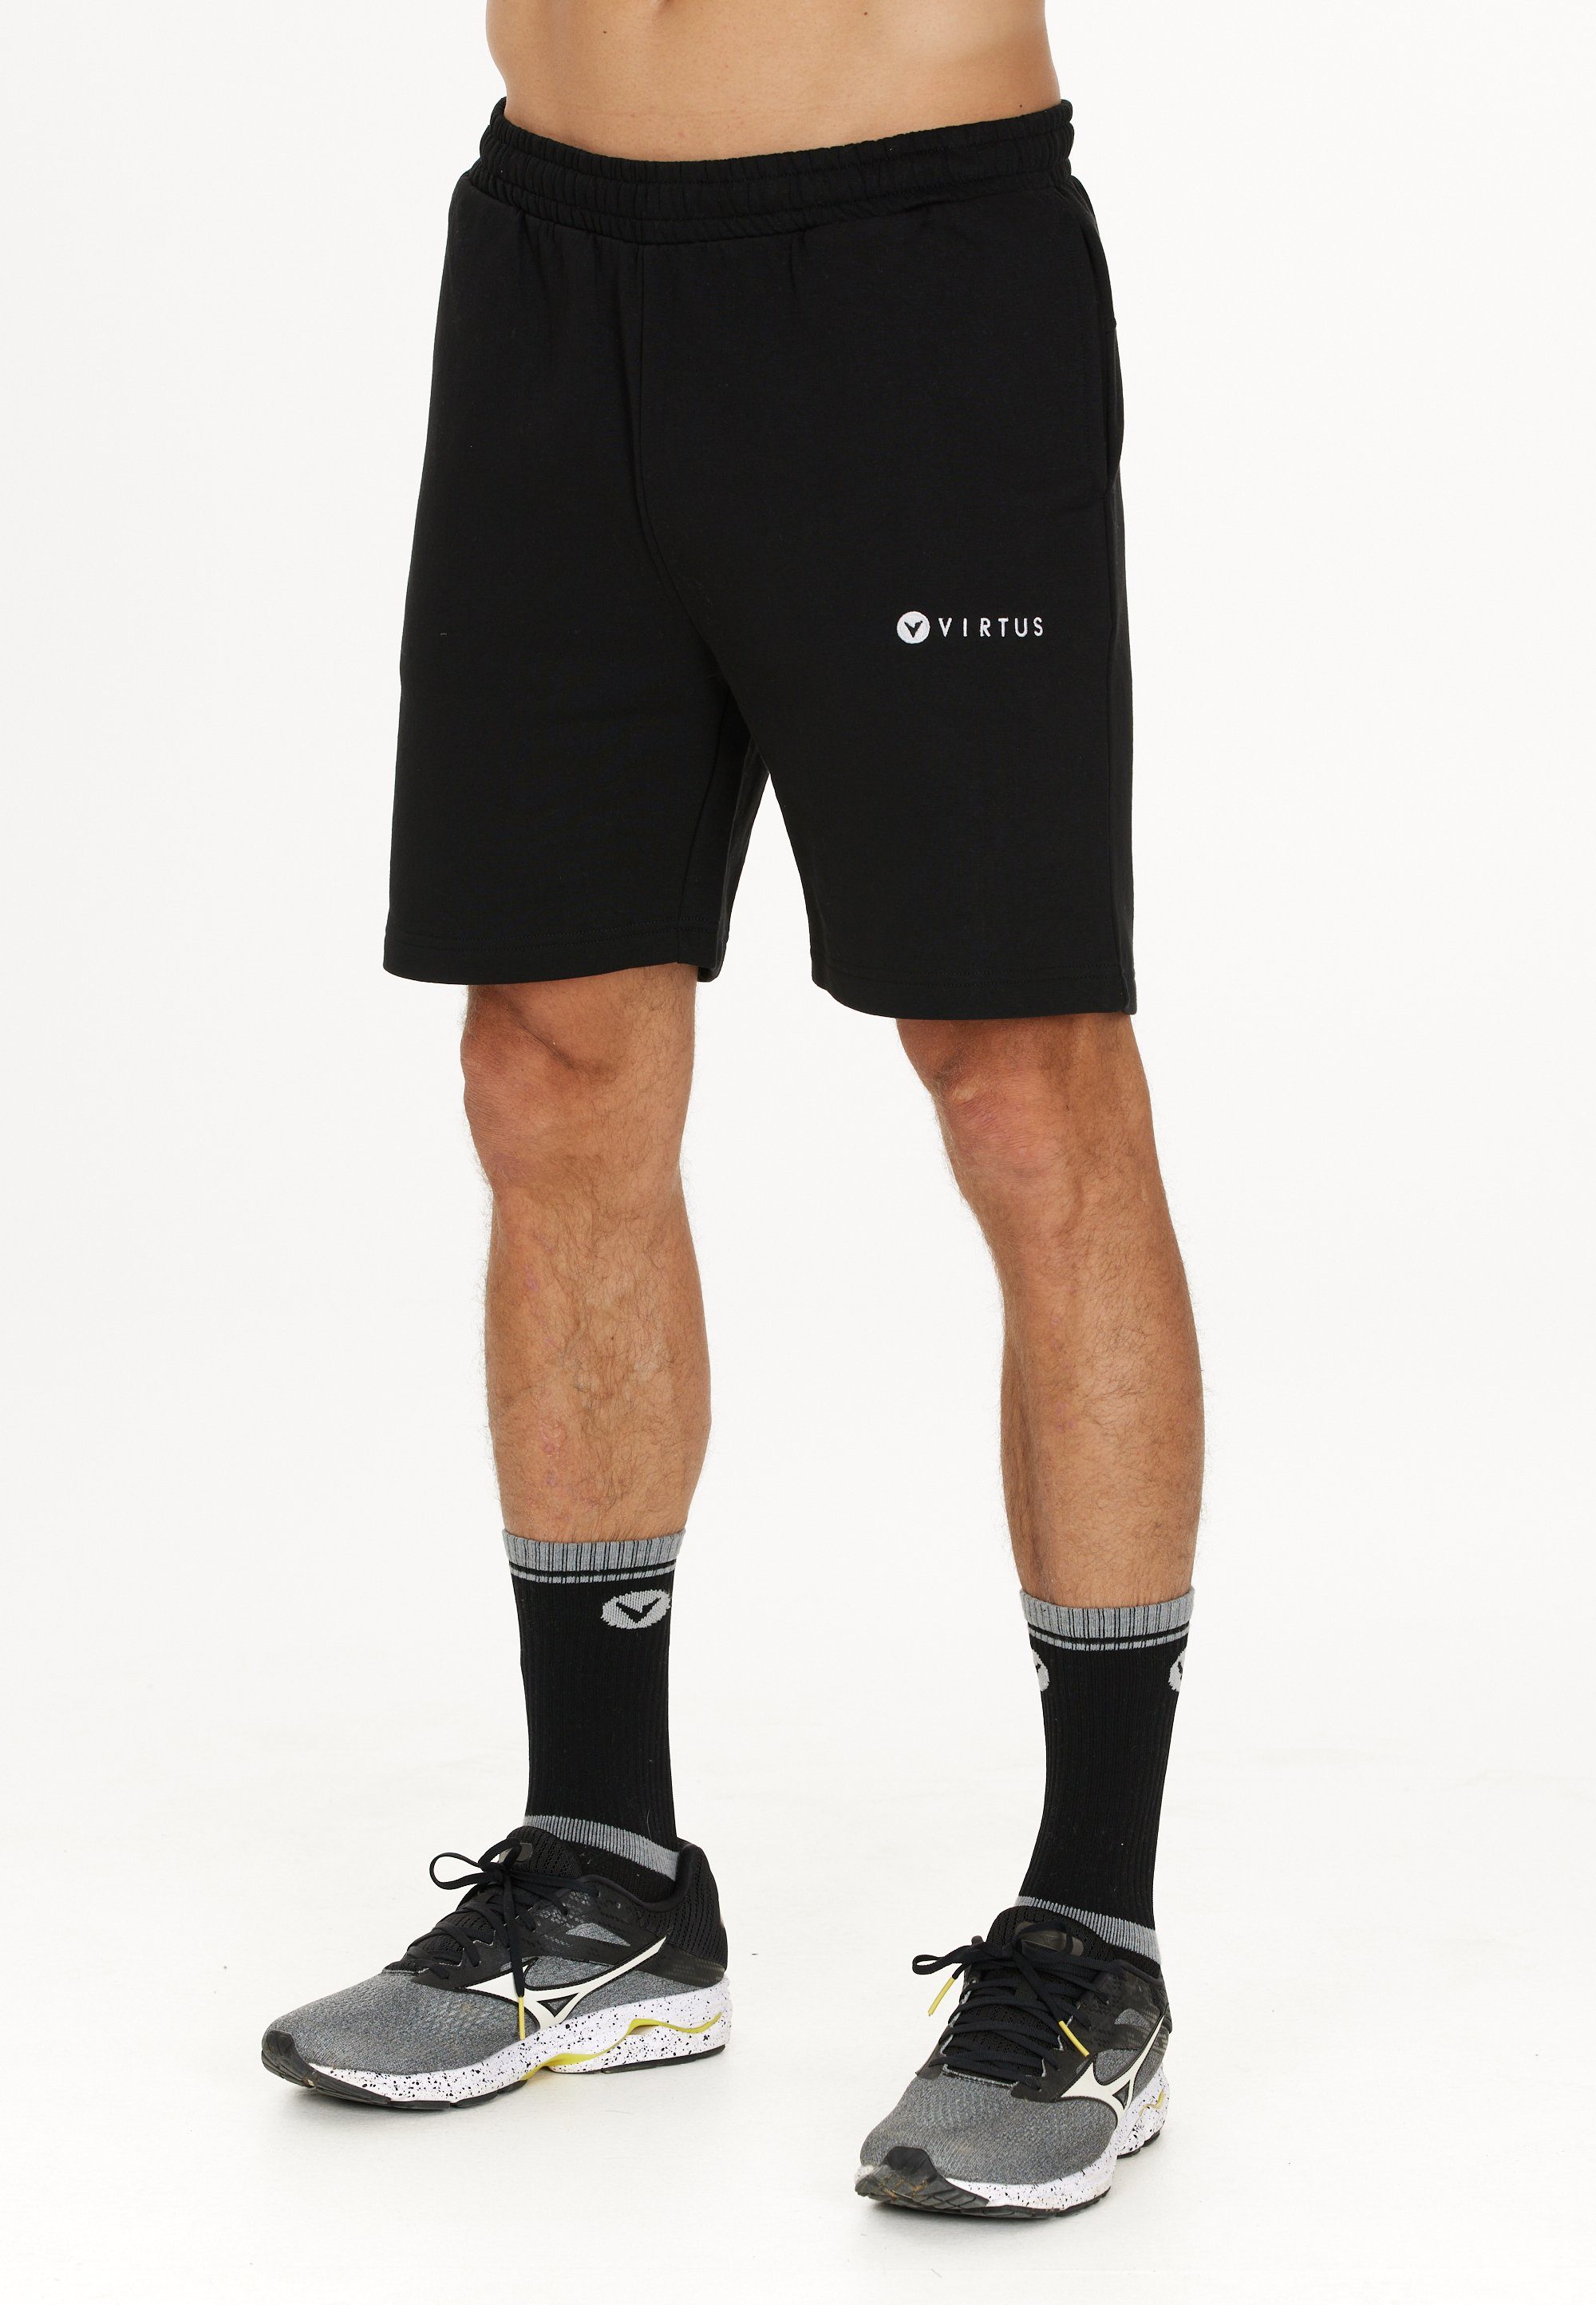 Kritow Virtus sportlichem schwarz Design Shorts in